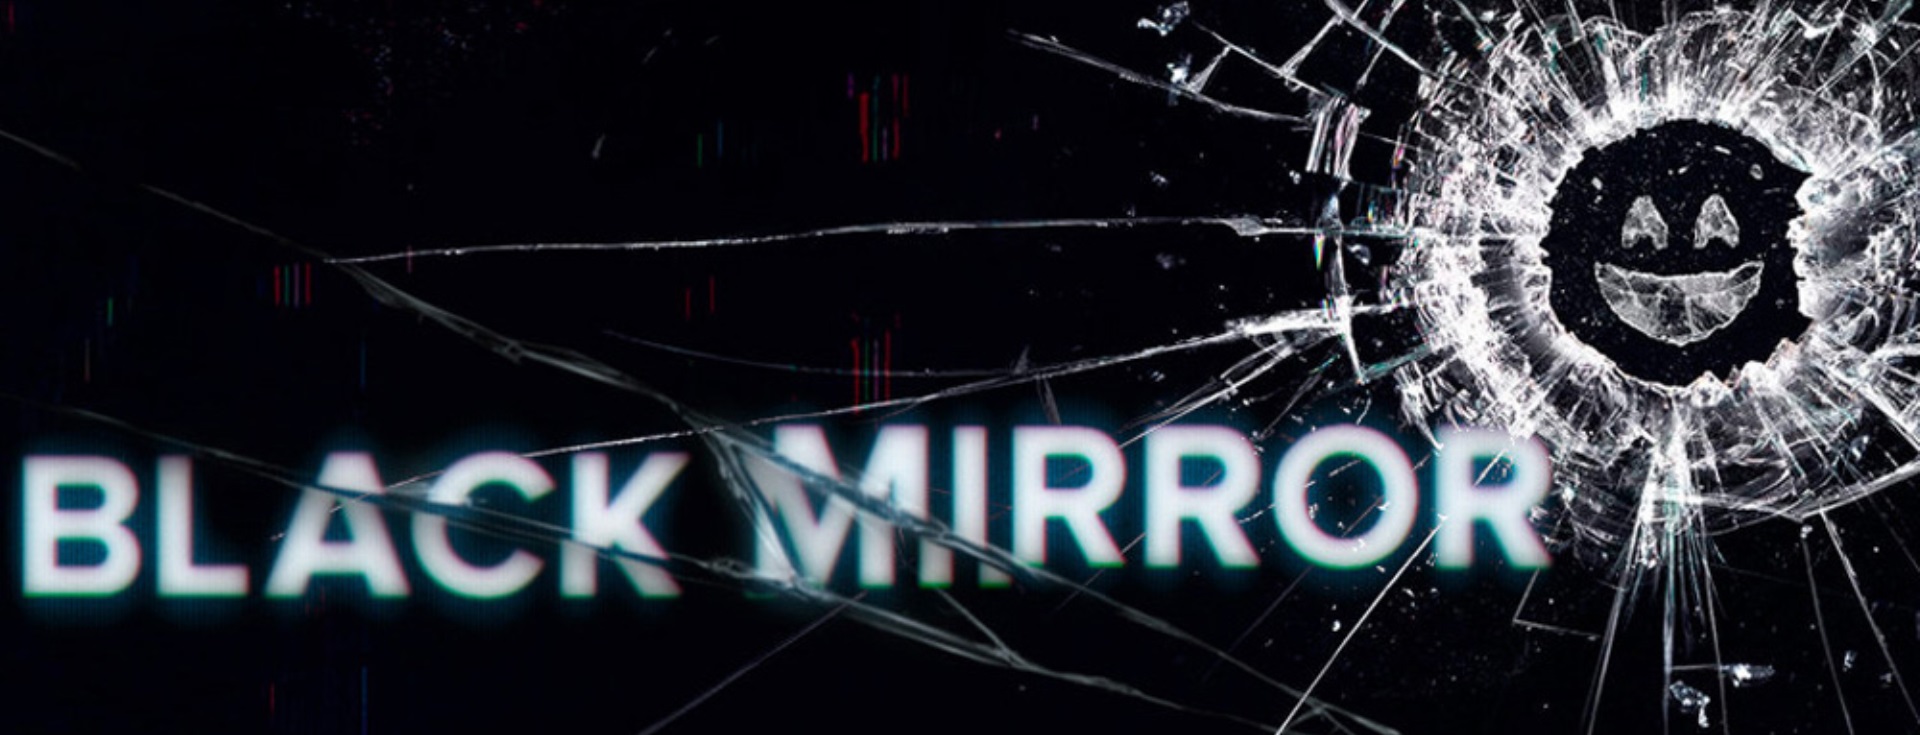 Black Mirror'un Çağımızla İlgili Bize Verdiği 5 Ders 